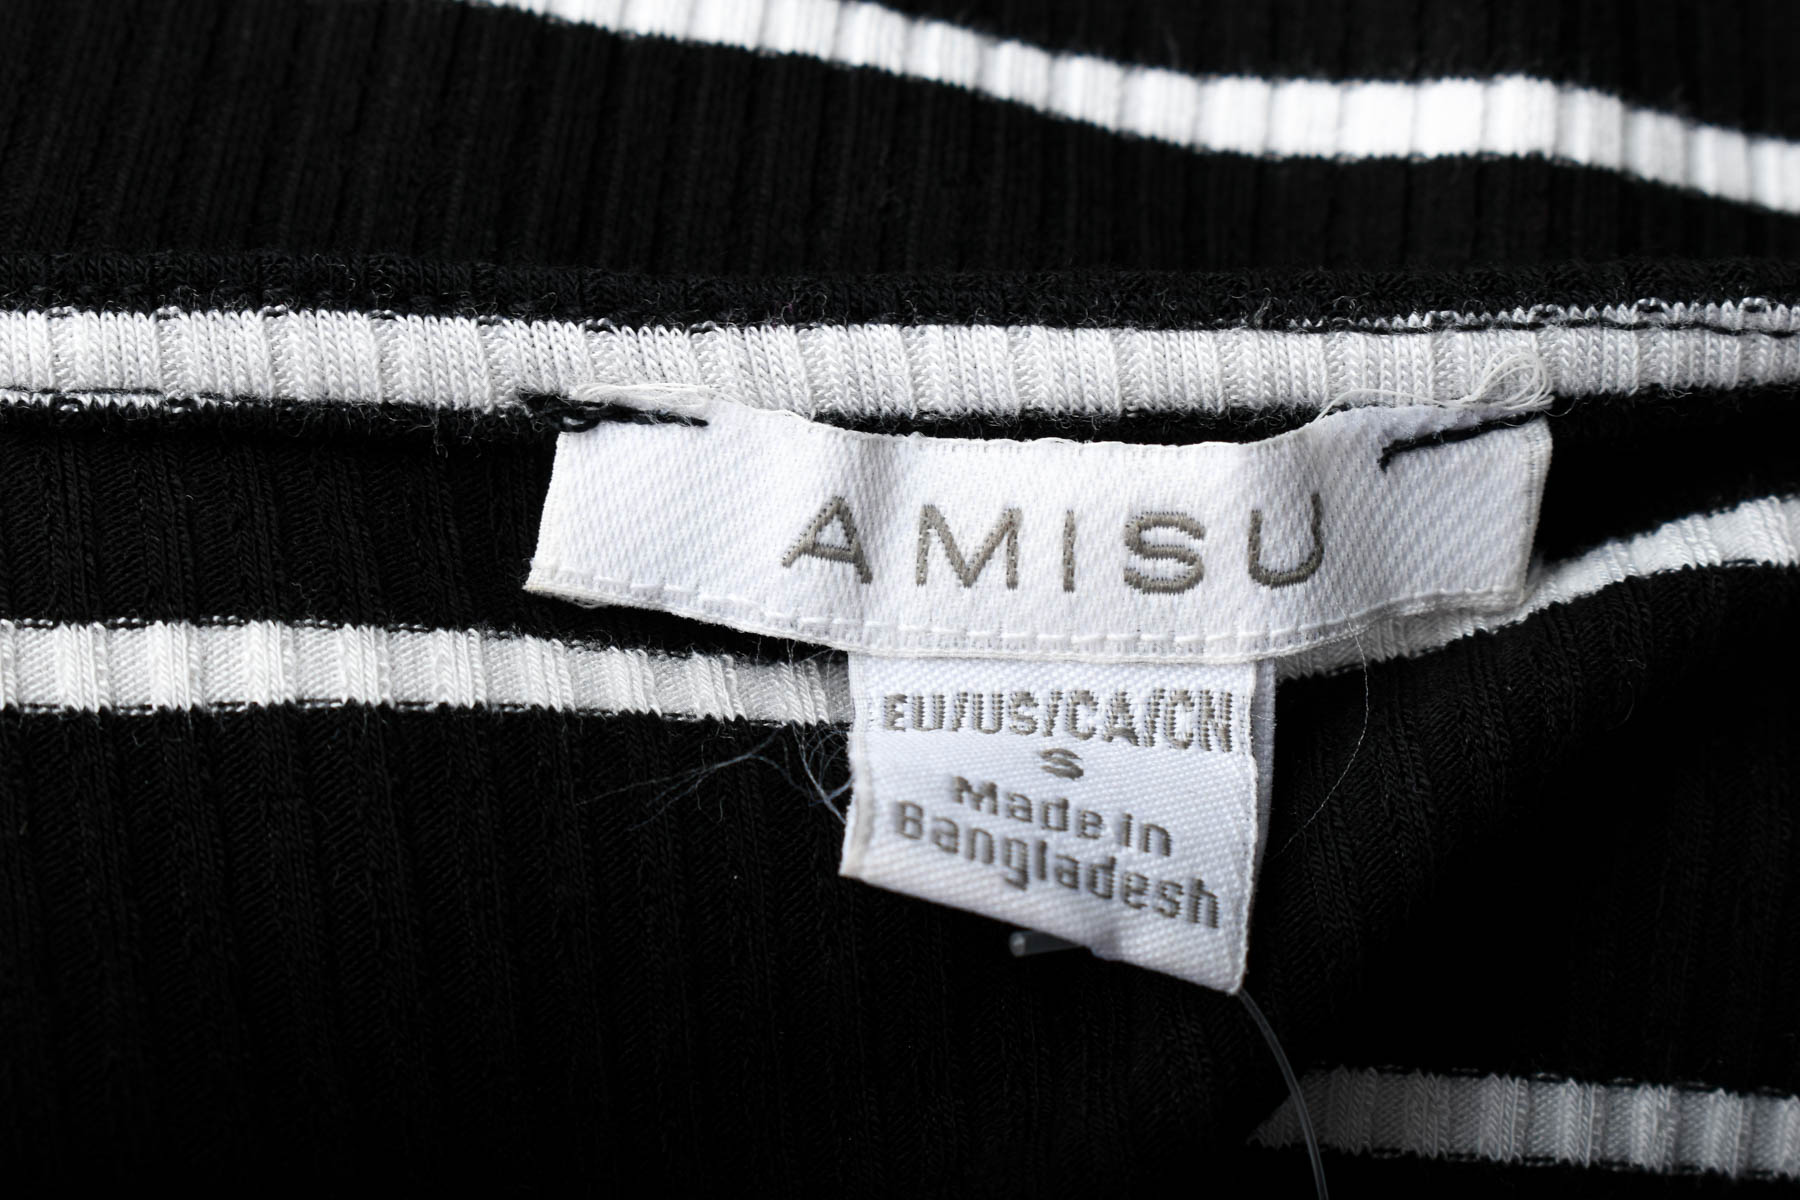 Damski podkoszulek - AMISU - 2